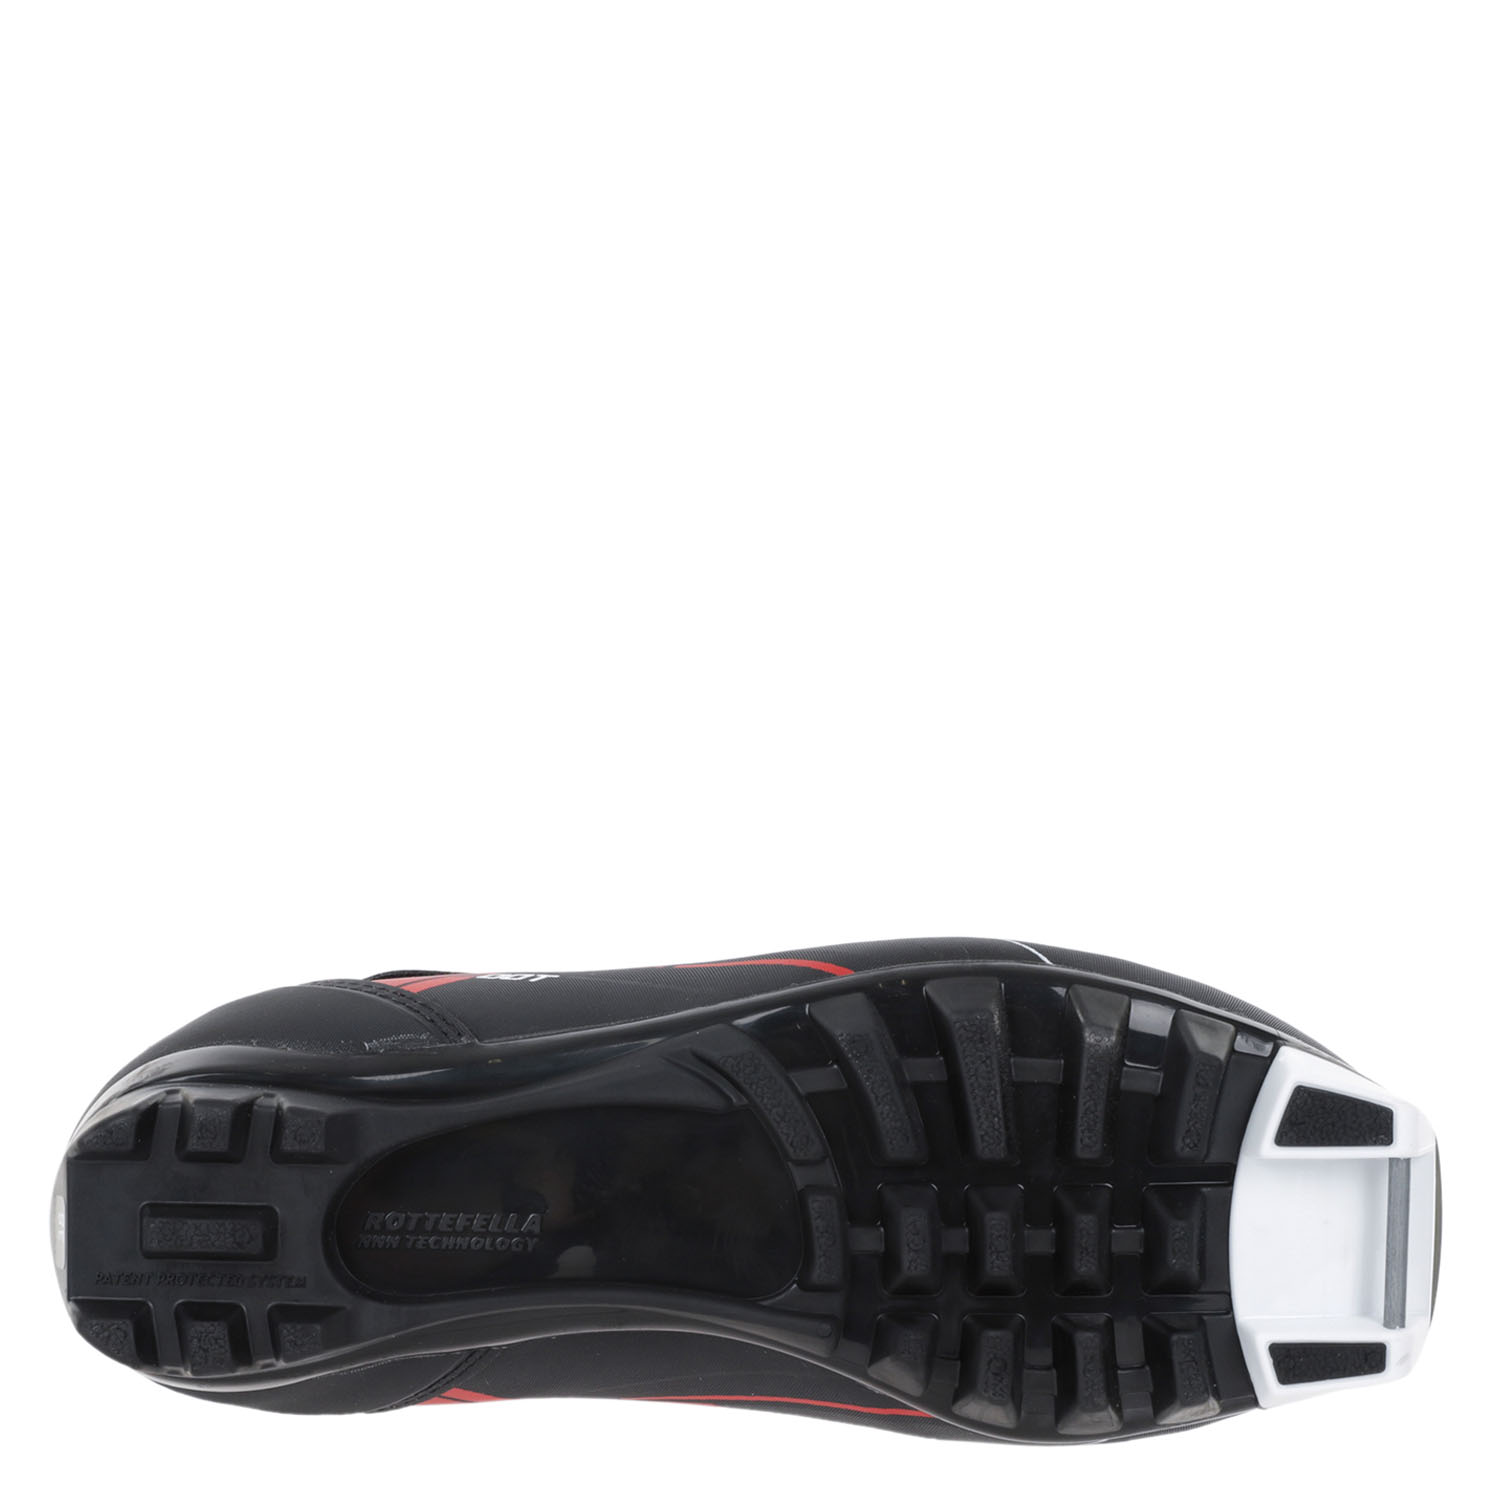 Лыжные ботинки Alpina. TJ BLACK/RED